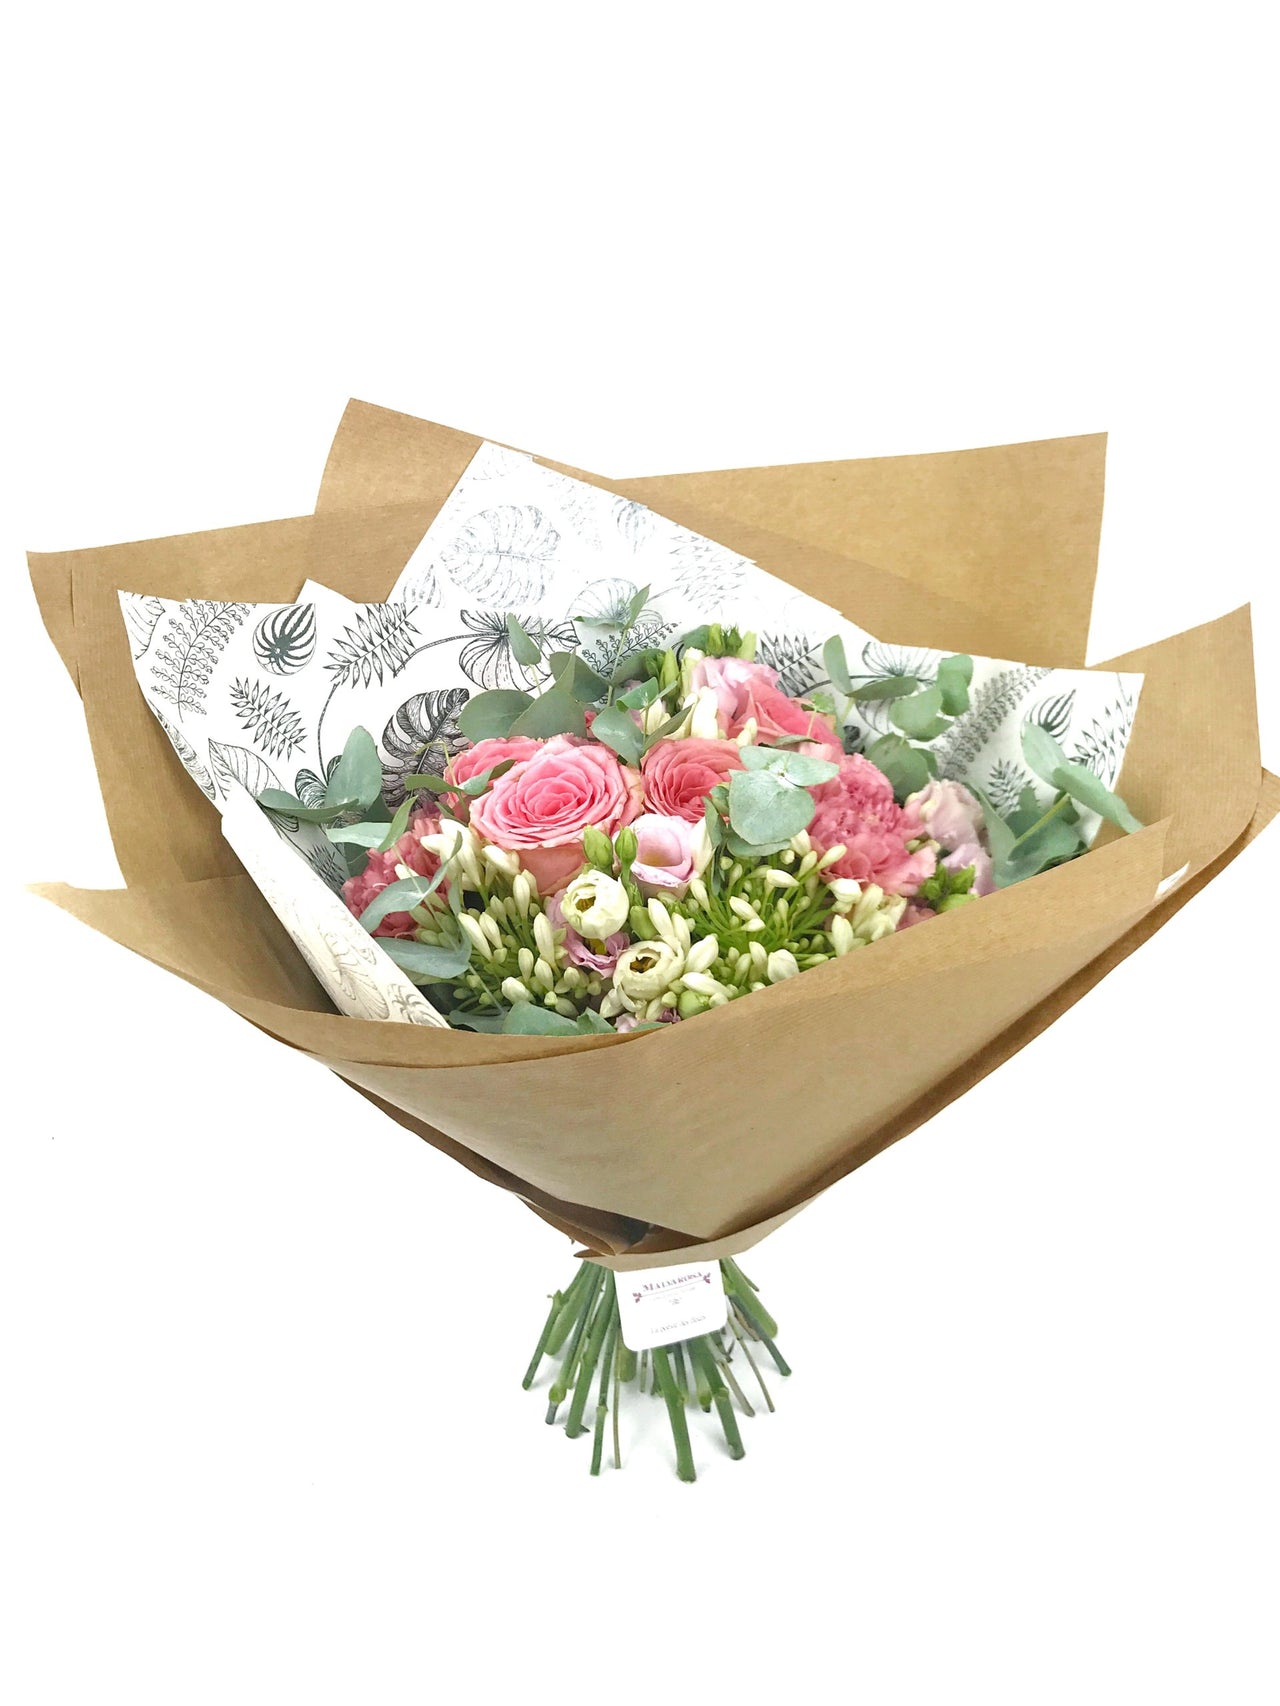 Envoi de fleurs pour anniversaire - Grand bouquet 